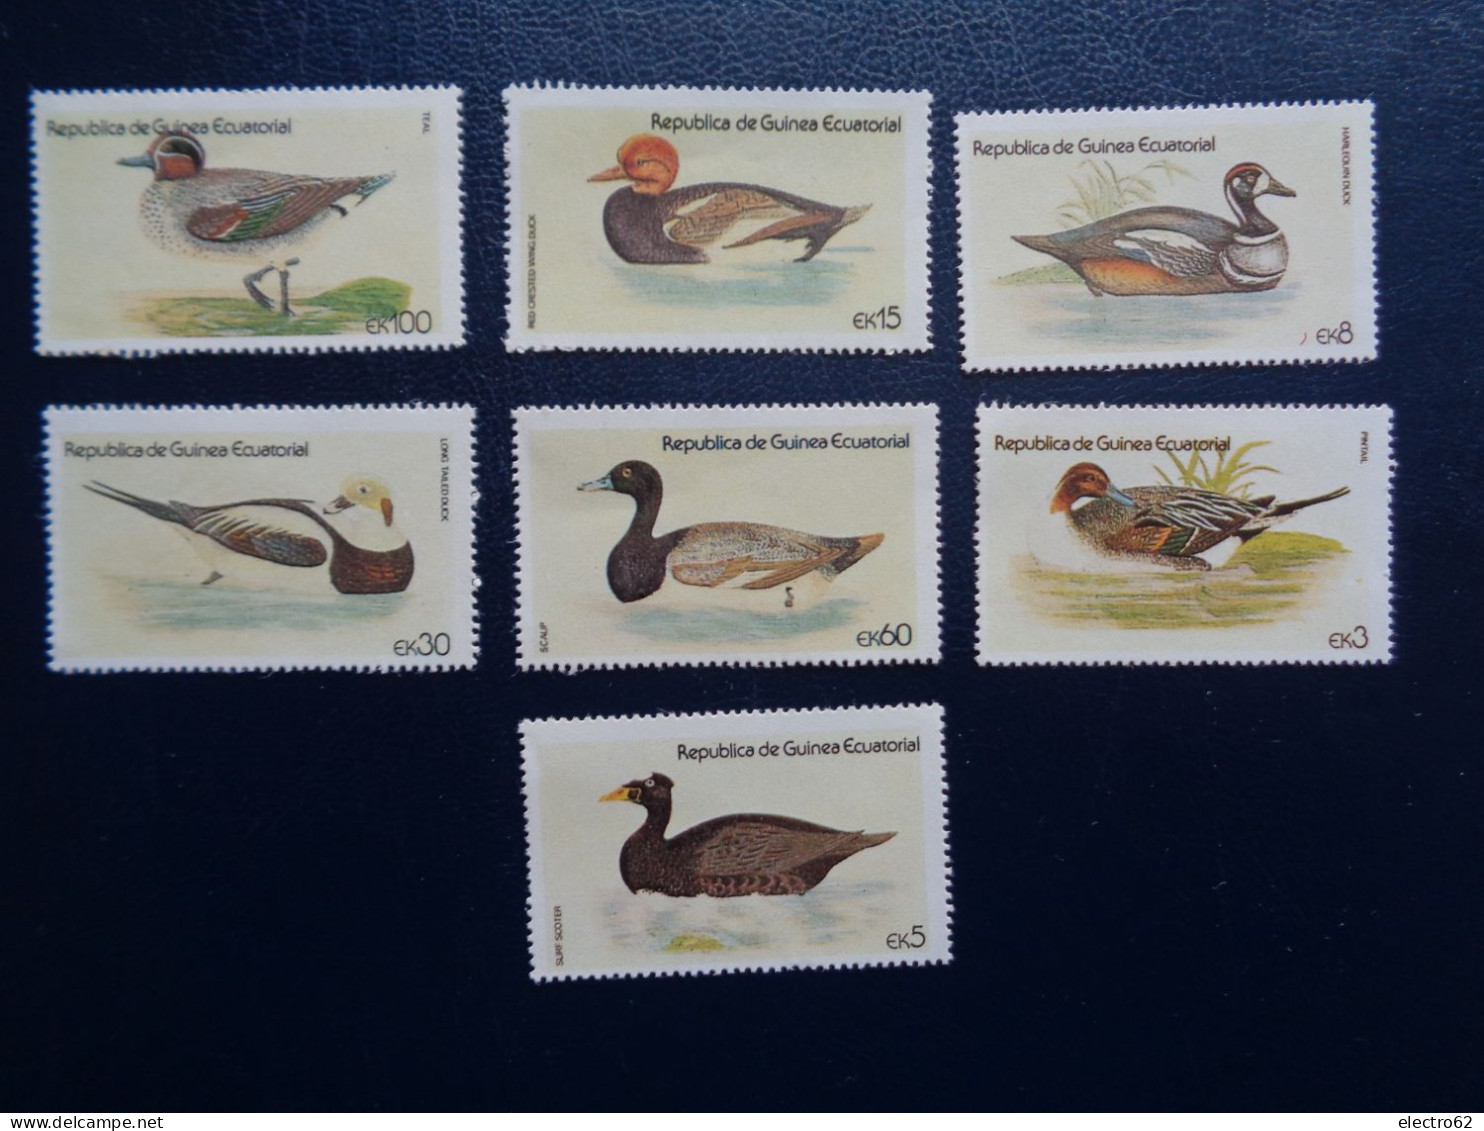 Guinée Equatoriale Canard Duck Ente Pato Anatra Eend Giappone And Guinea Ecuatorial - Canards